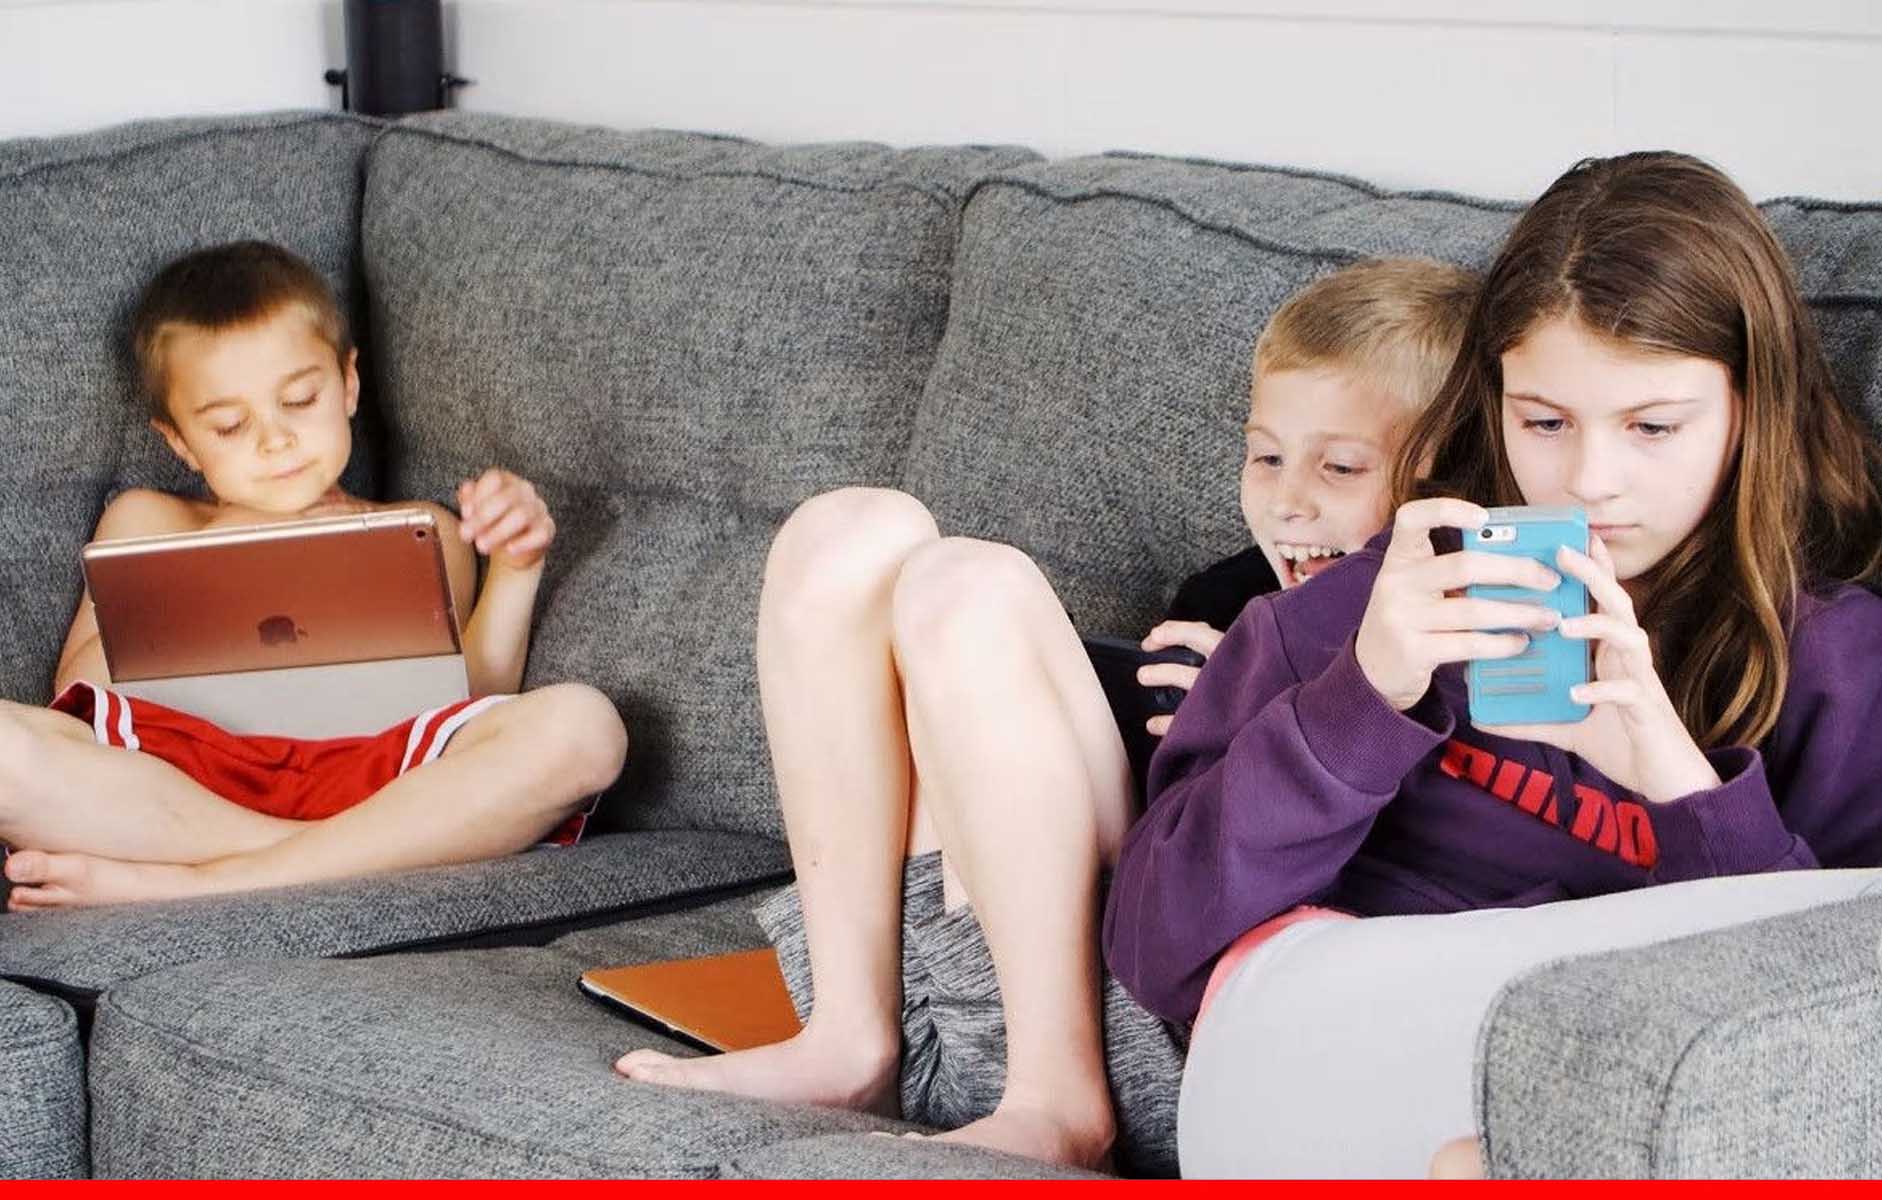 बच्चों को लग रही है मोबाइल टीवी की लत, जानें नुकसान और दूर करने के उपाय